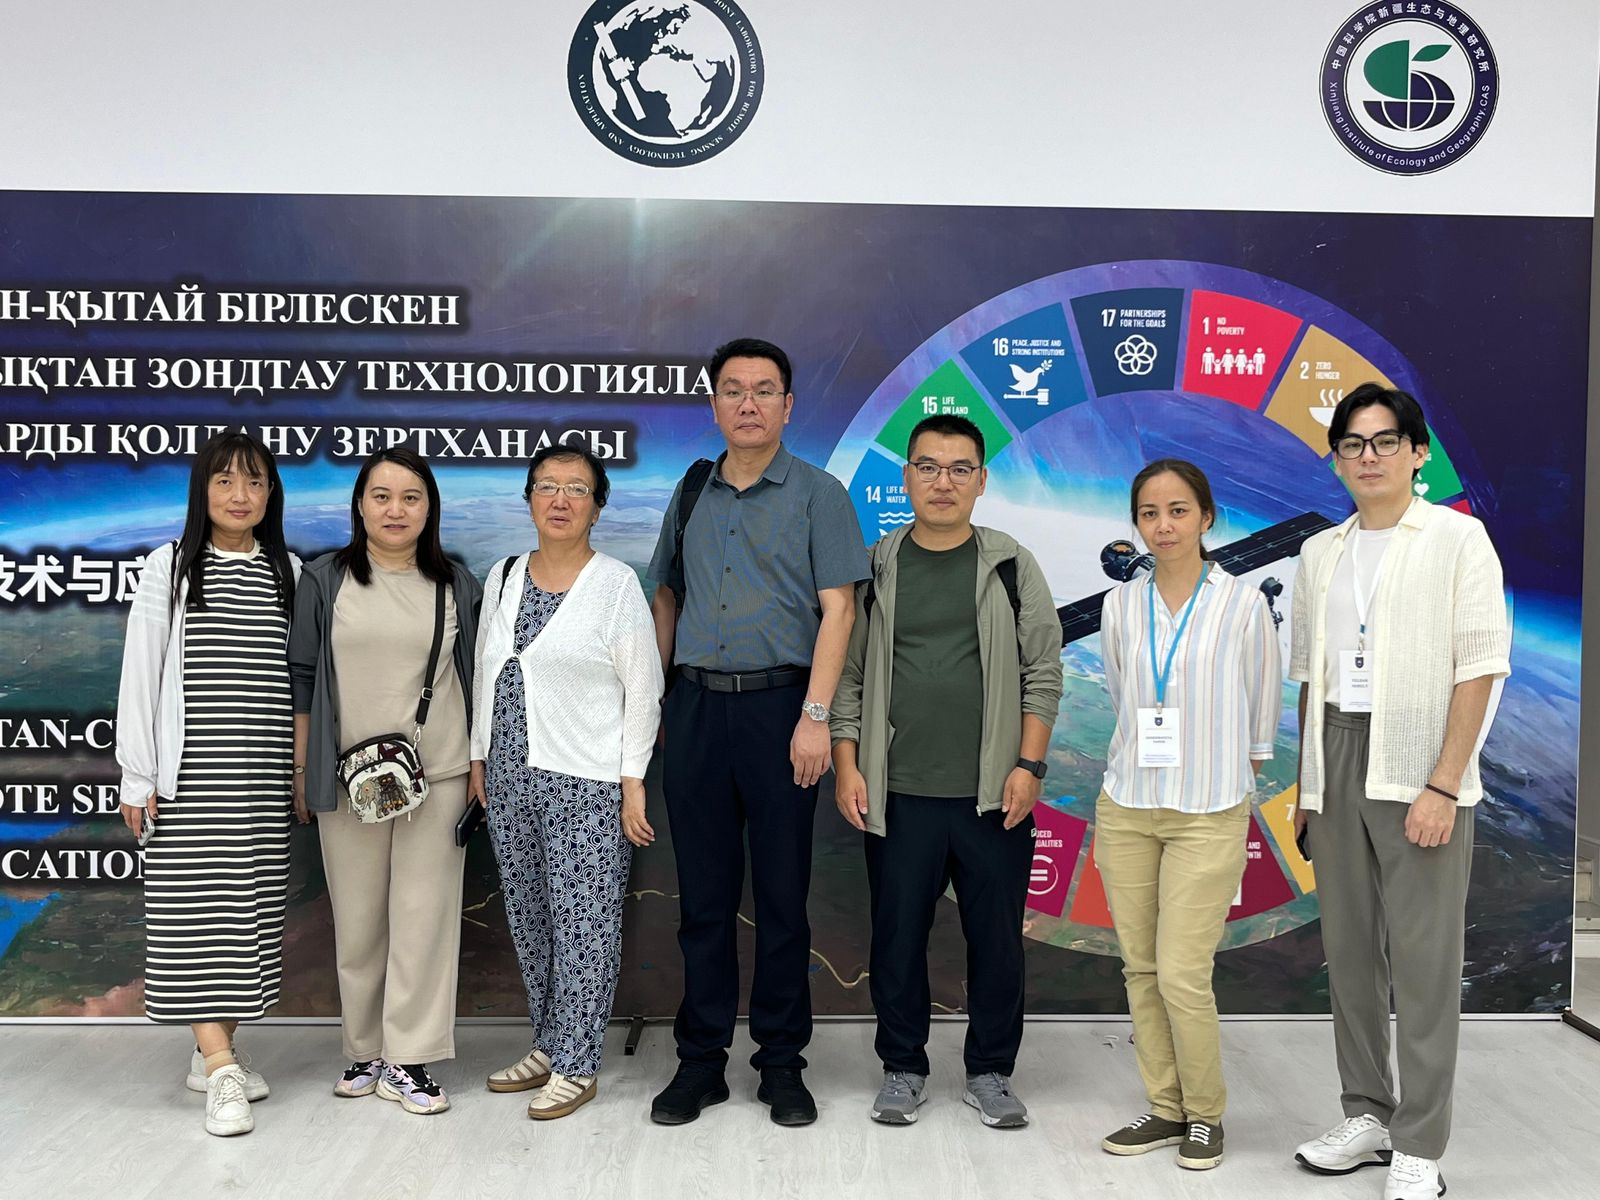 Ученые из Qilu Technical University (КНР) посетили Научный центр «Устойчивое развитие и рациональное природопользование» и лабораторию «Технологии дистанционного зондирования и применения»